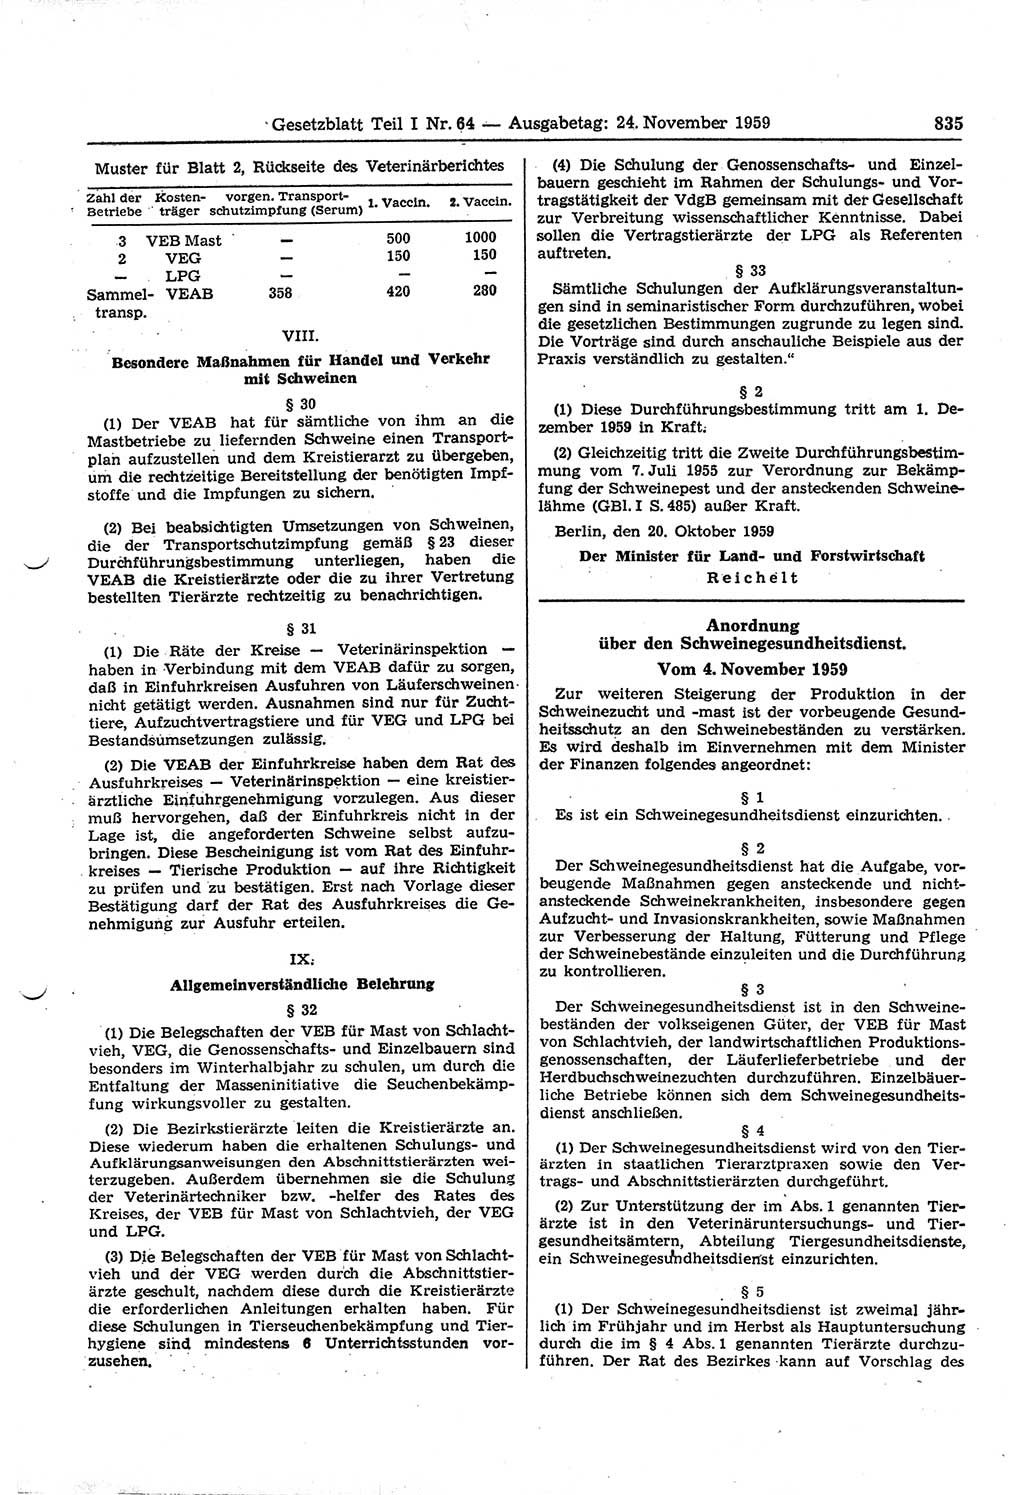 Gesetzblatt (GBl.) der Deutschen Demokratischen Republik (DDR) Teil Ⅰ 1959, Seite 835 (GBl. DDR Ⅰ 1959, S. 835)